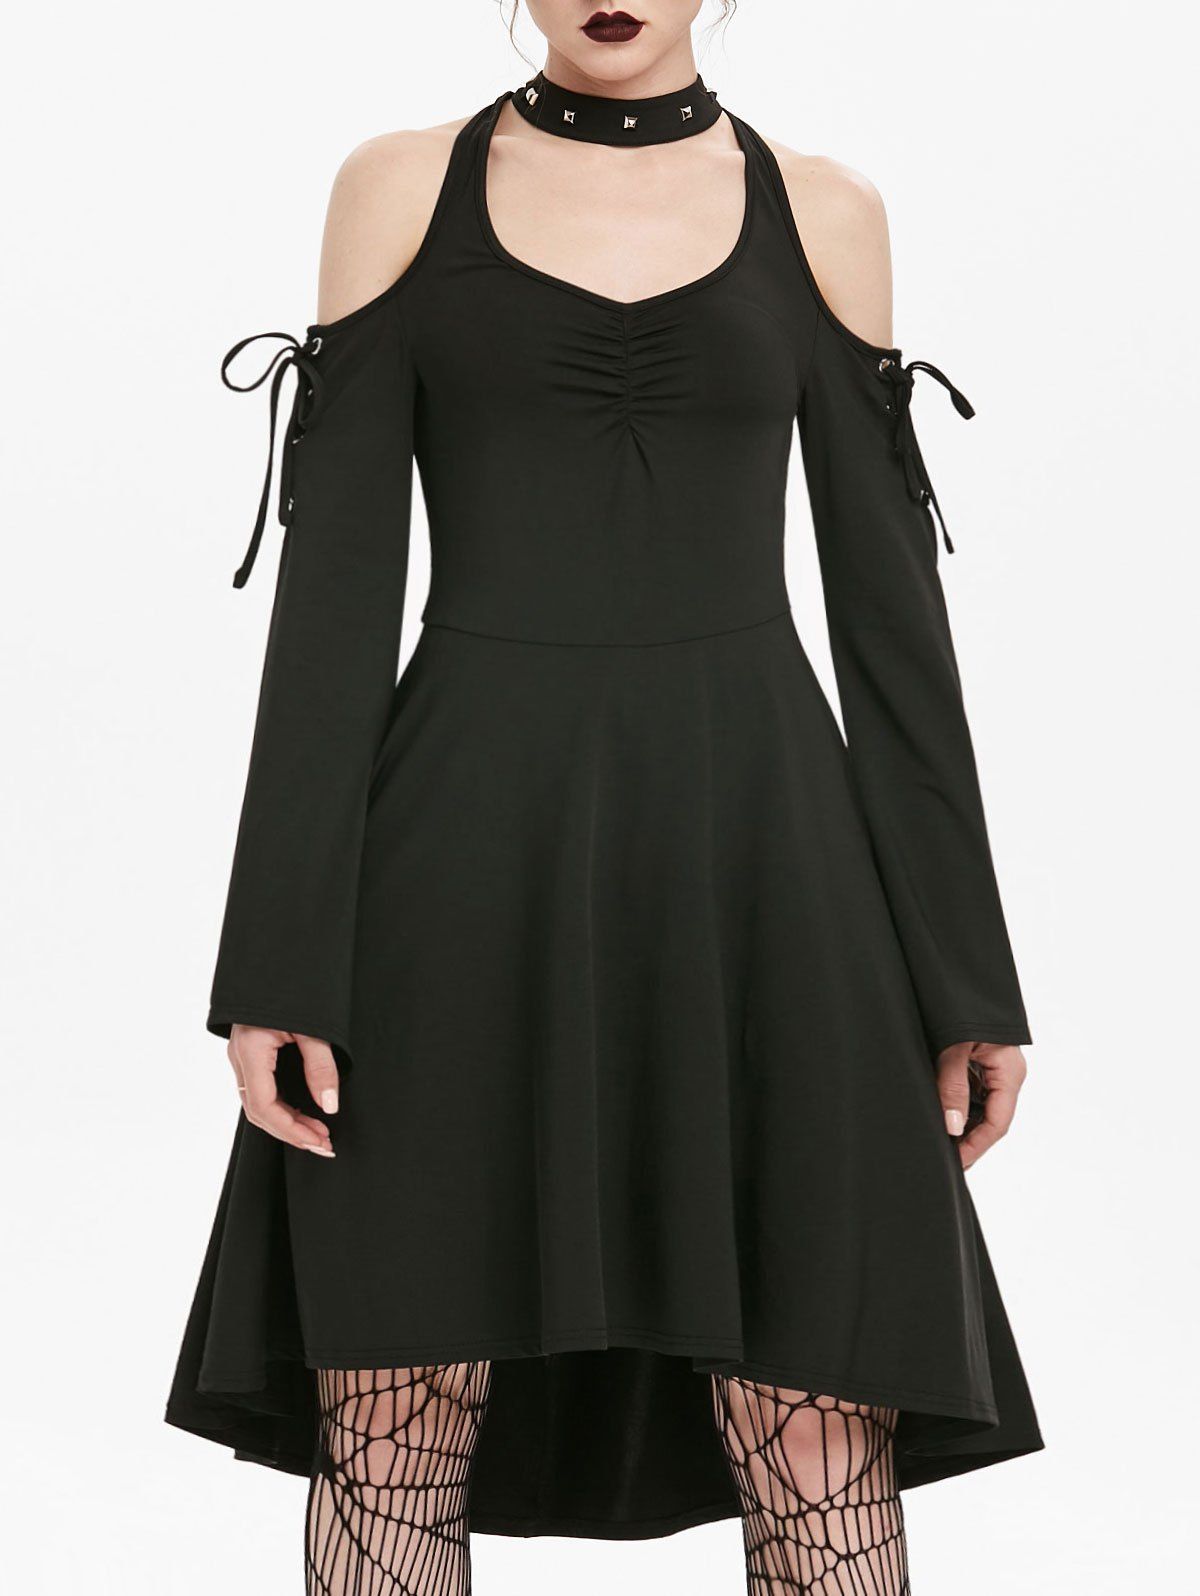 Gothic Cold Shoulder Lace Up Flare Sleeve Skater A Line Dress - BLACK M